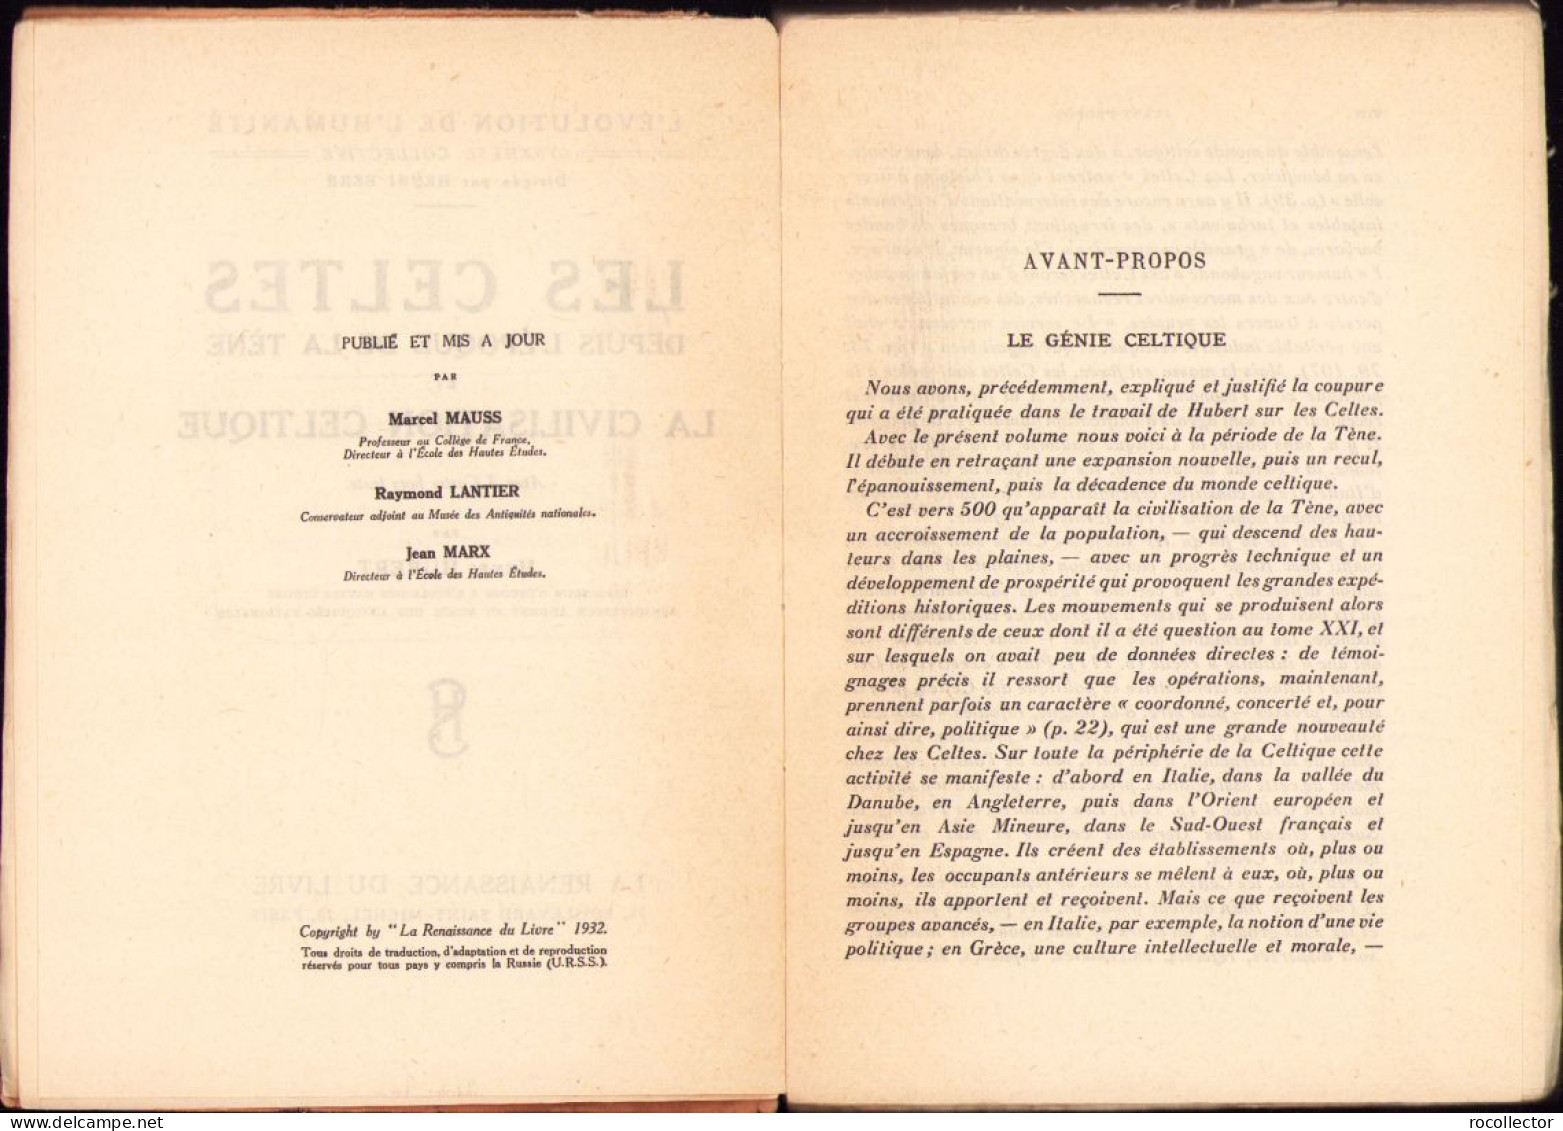 Les Celtes Depuis L’epoque De La Tene Et La Civilisation Celtique Par Henri Hubert, 1932 642SP - Livres Anciens